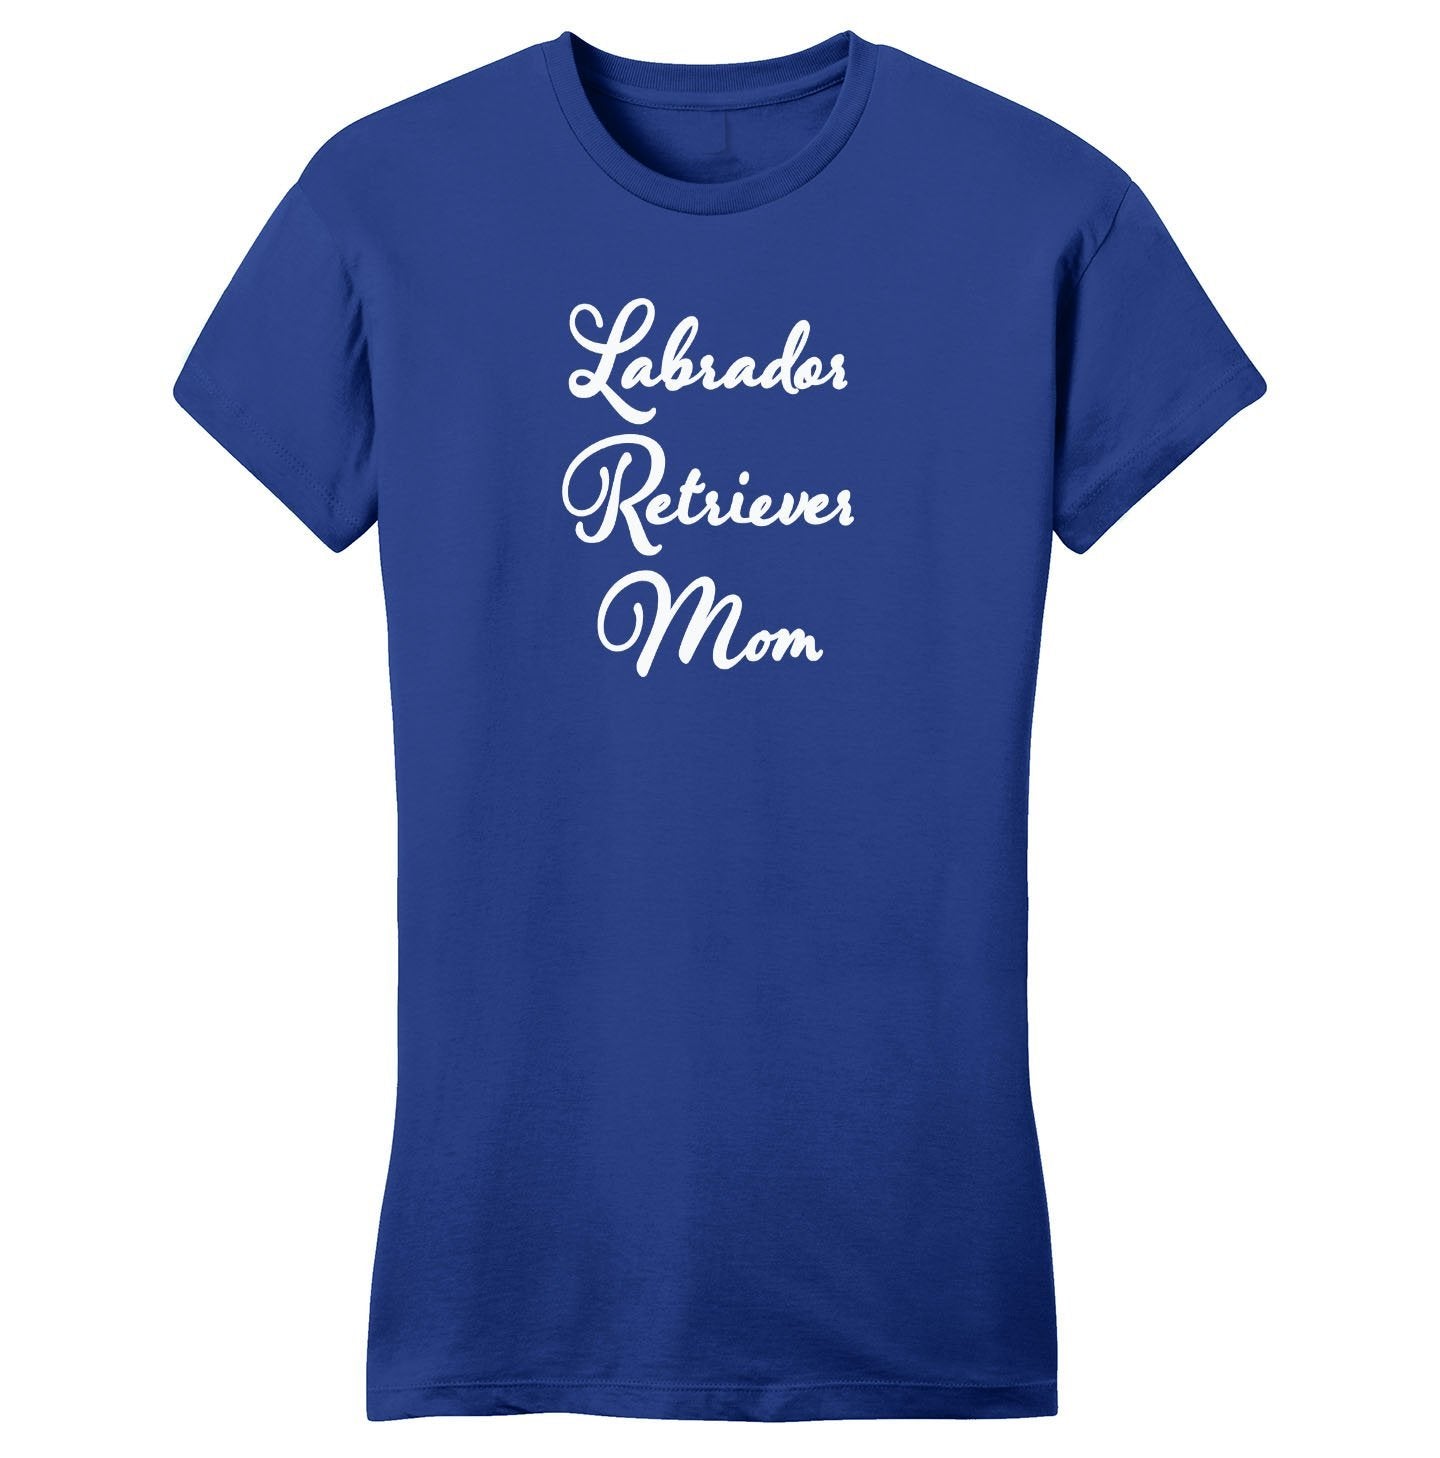 Labrador Retriever Mom - Script - Women's Fitted T-Shirt